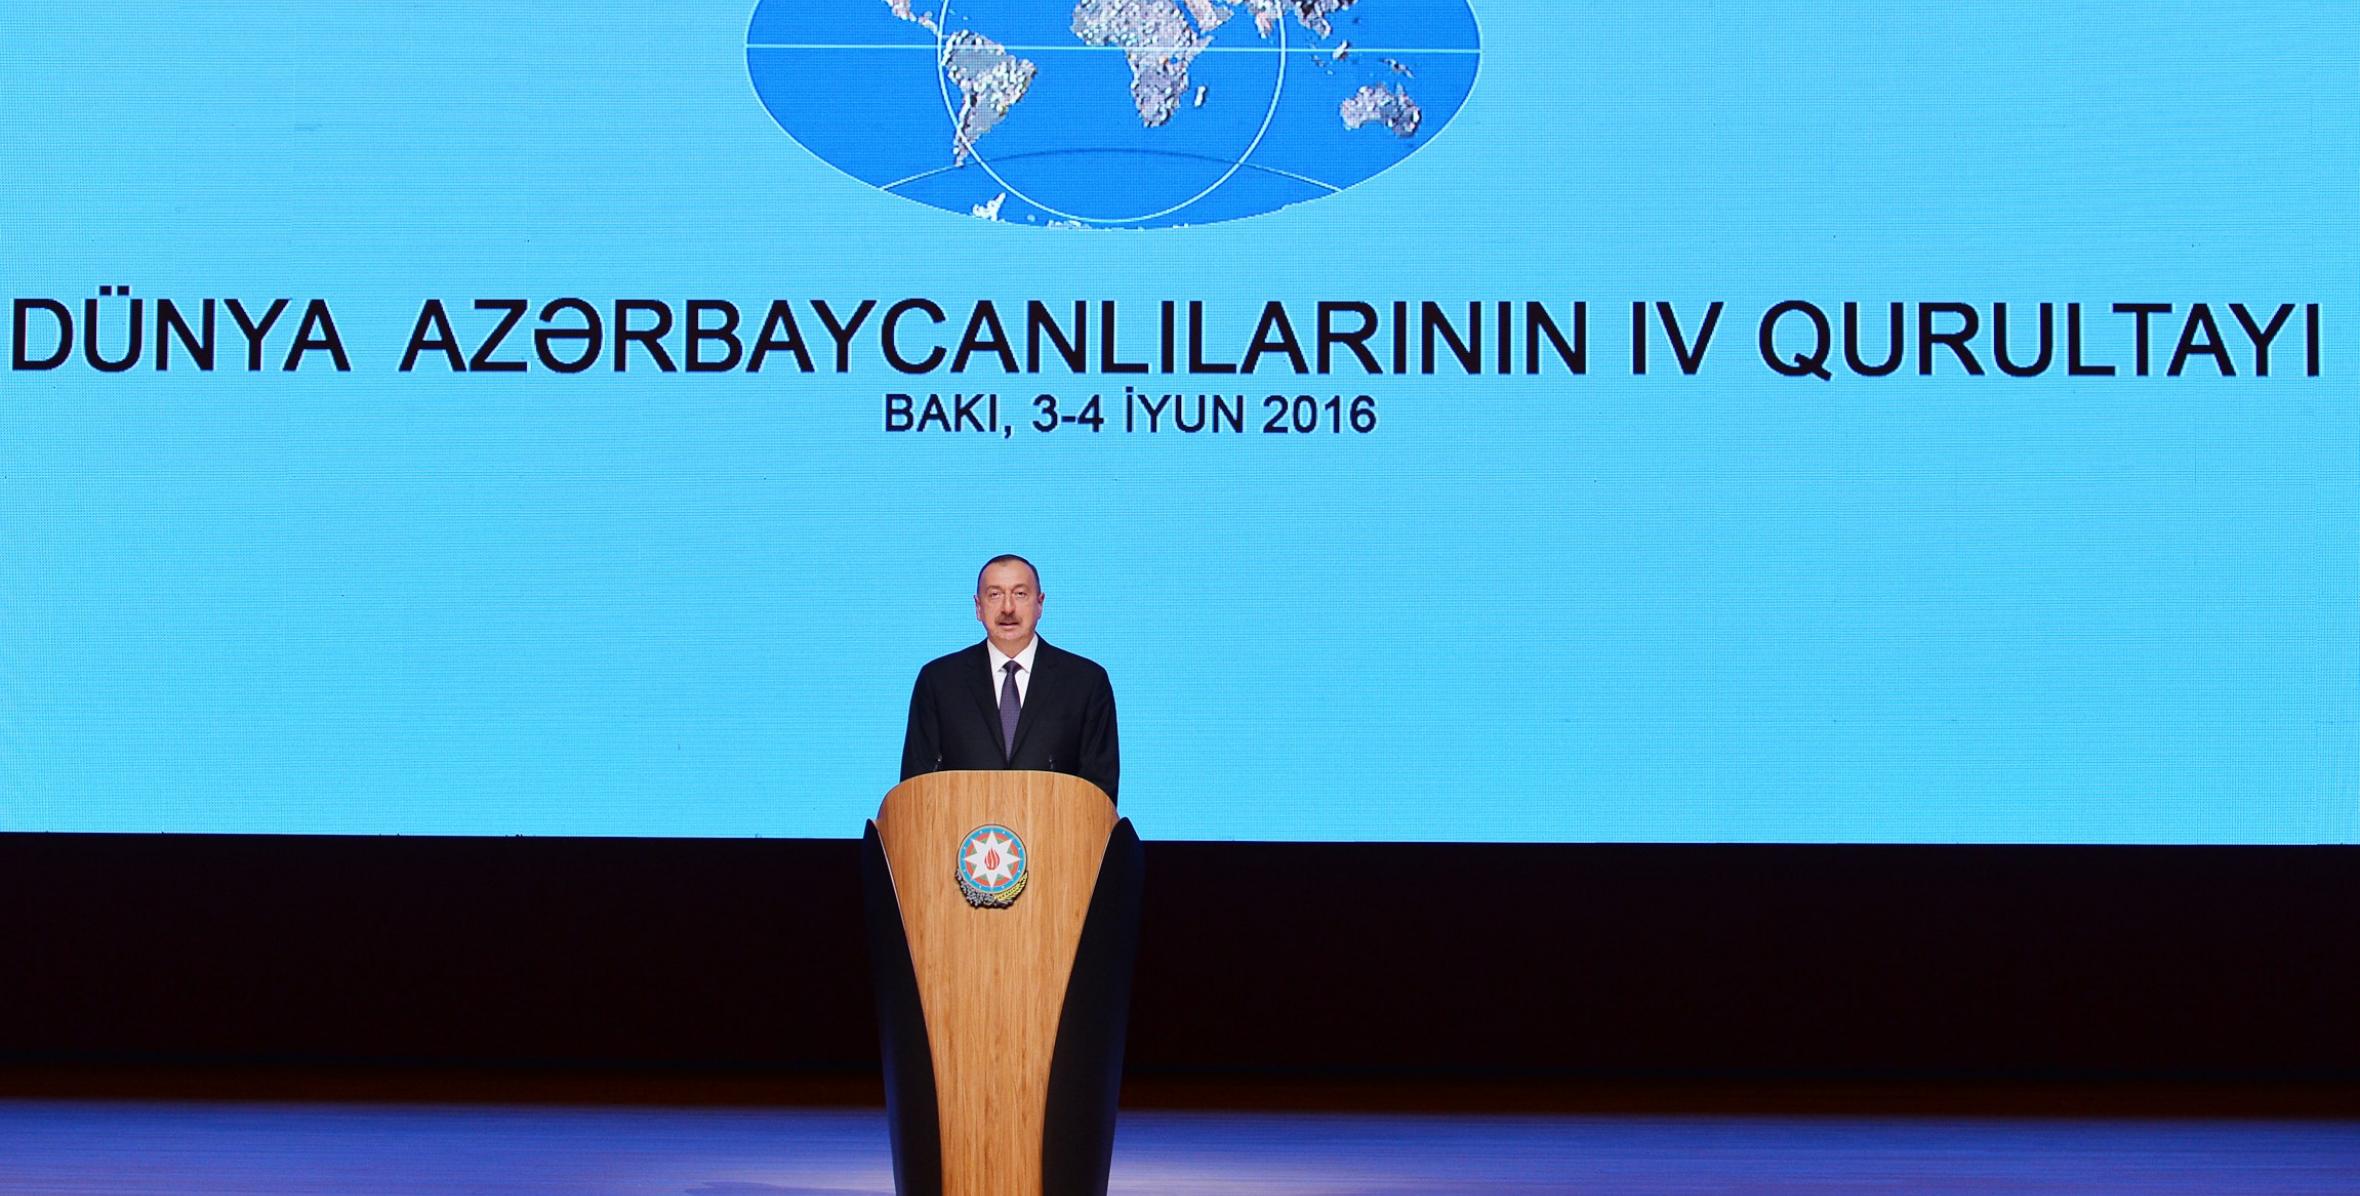 Dünya Azərbaycanlılarının IV Qurultayının açılışında İlham Əliyevin nitqi